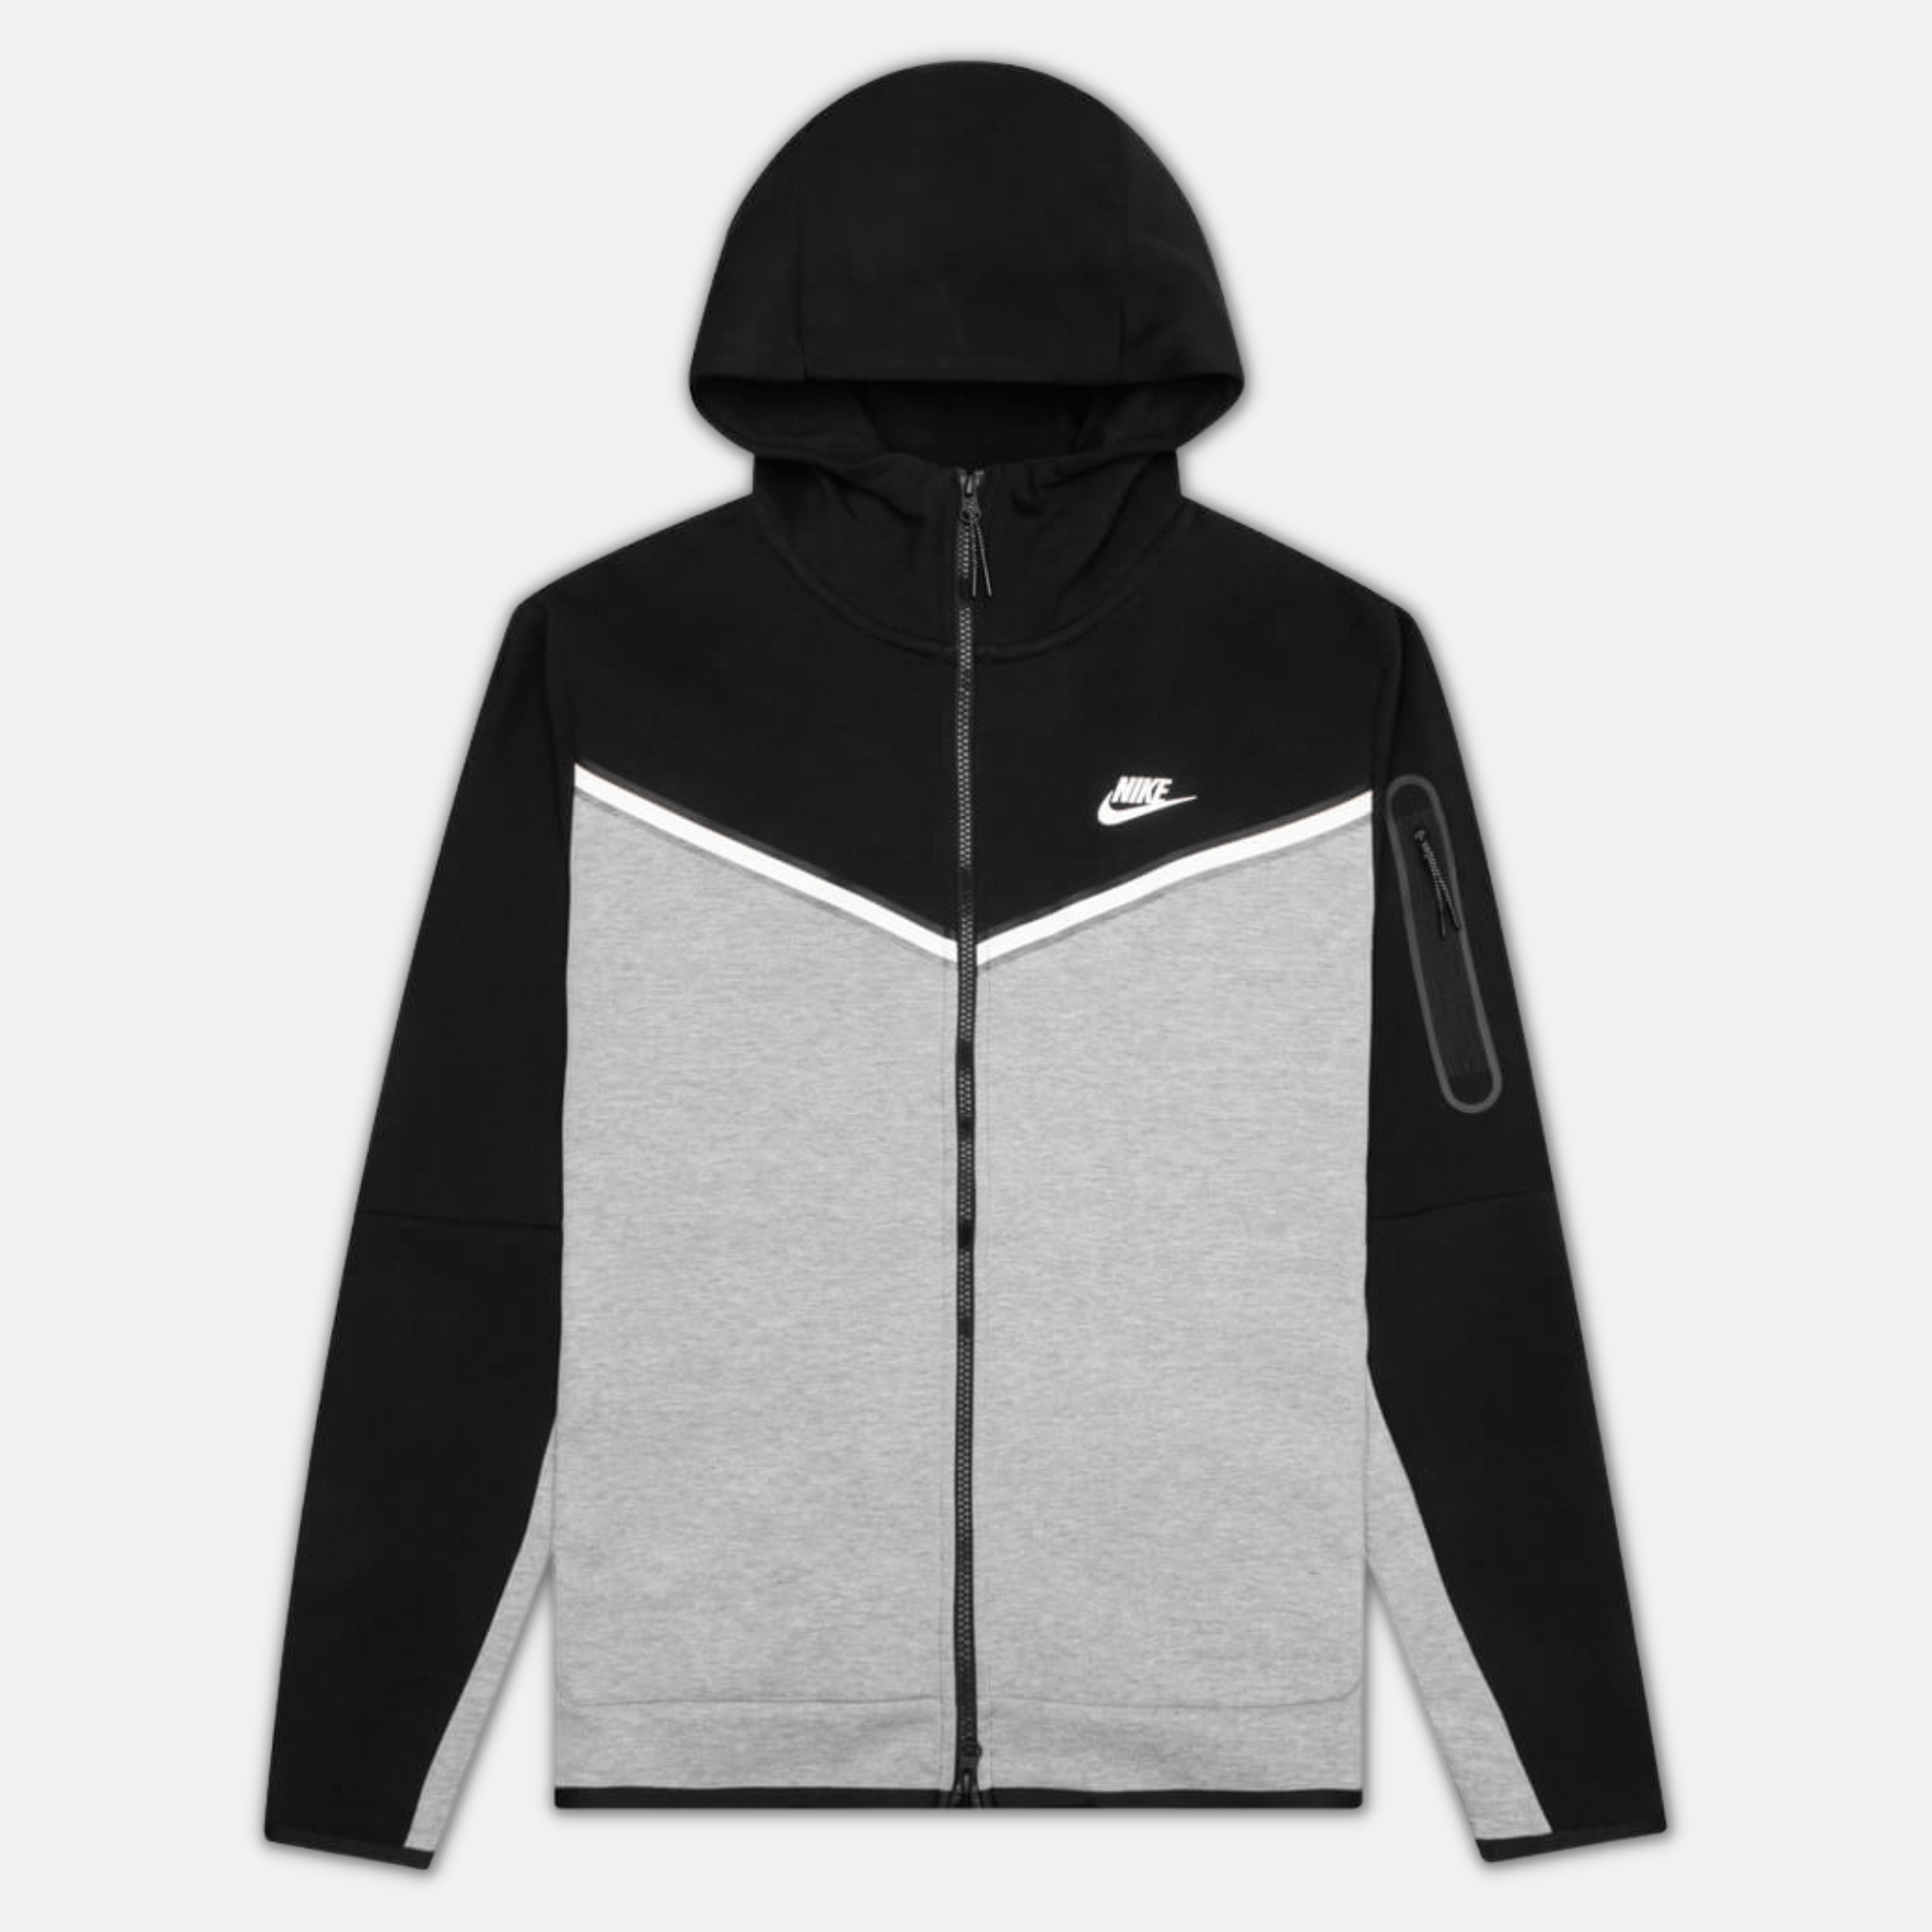 Nike Tech Fleece Hoodie - Black, Grey & White (3rd Gen)